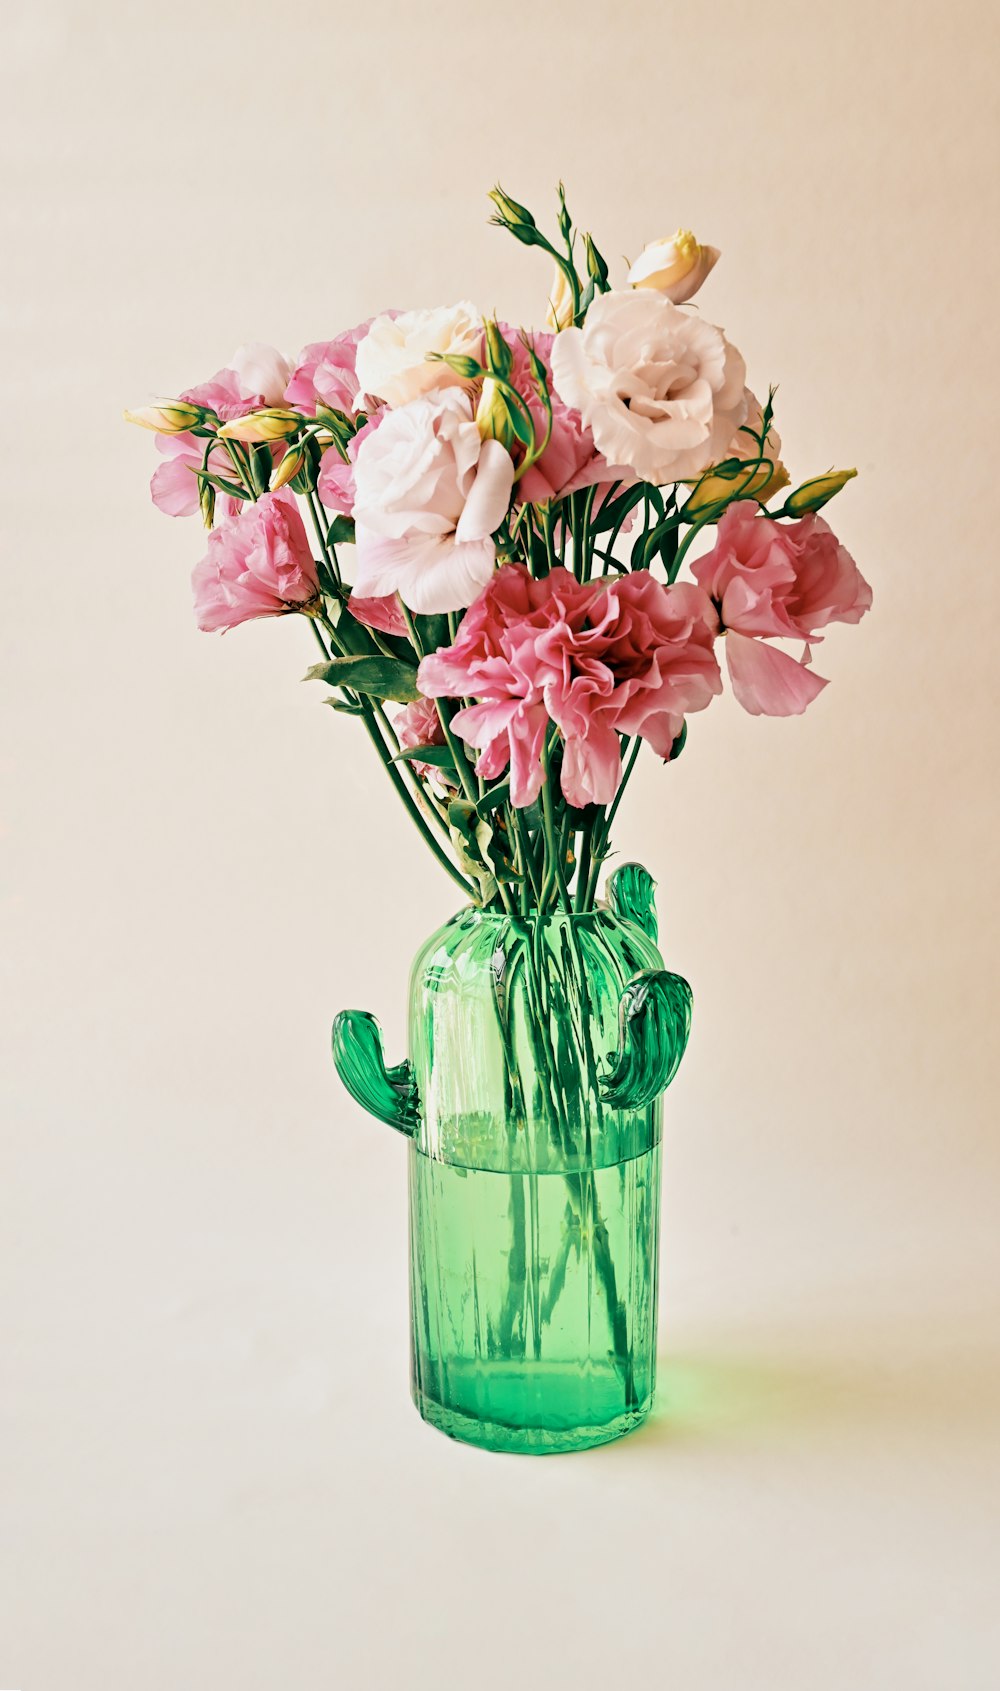 flores rosas y blancas en jarrón de vidrio verde